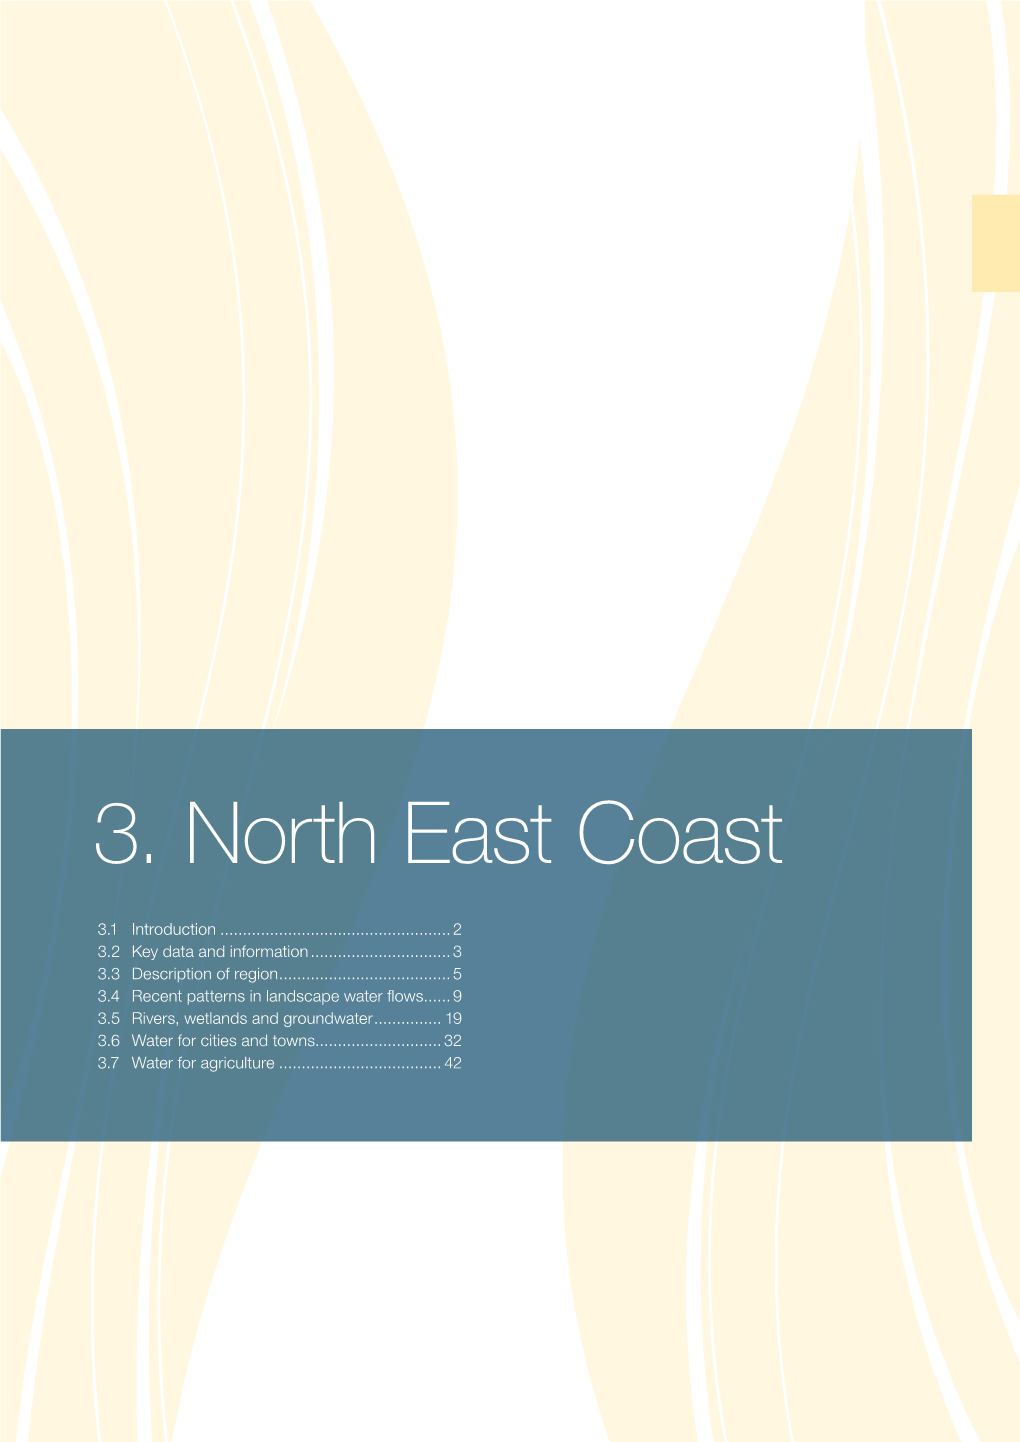 3. North East Coast